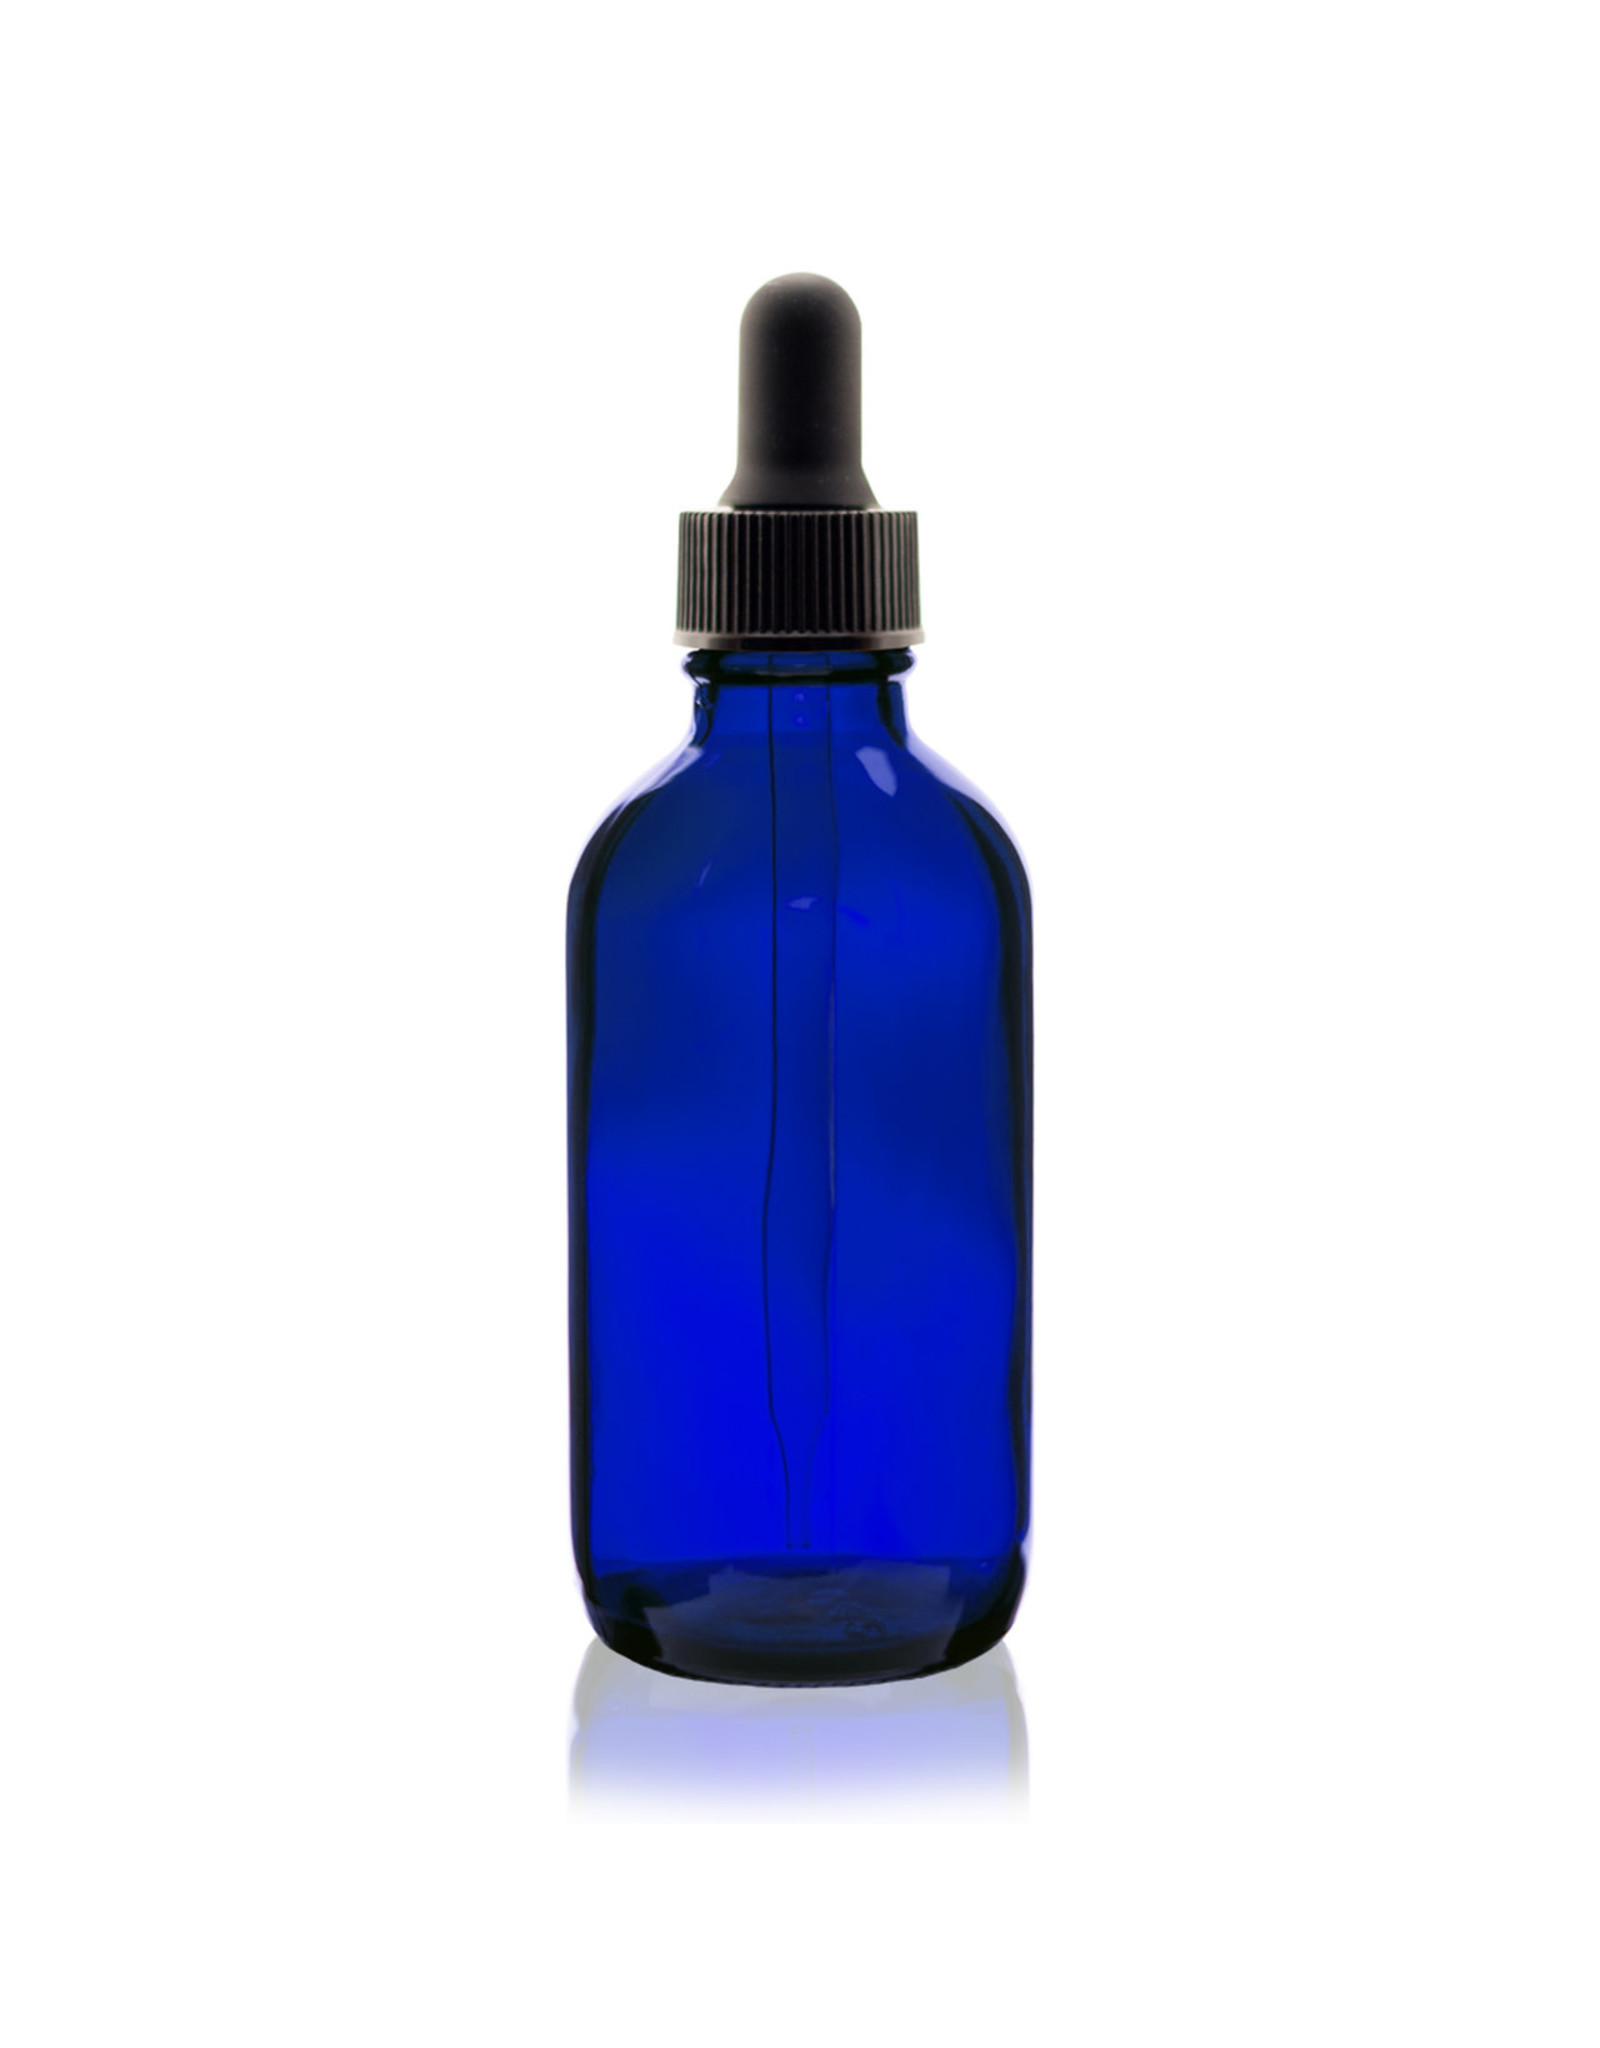 Uline Glass Dropper Bottle - One, 4 oz, Blue